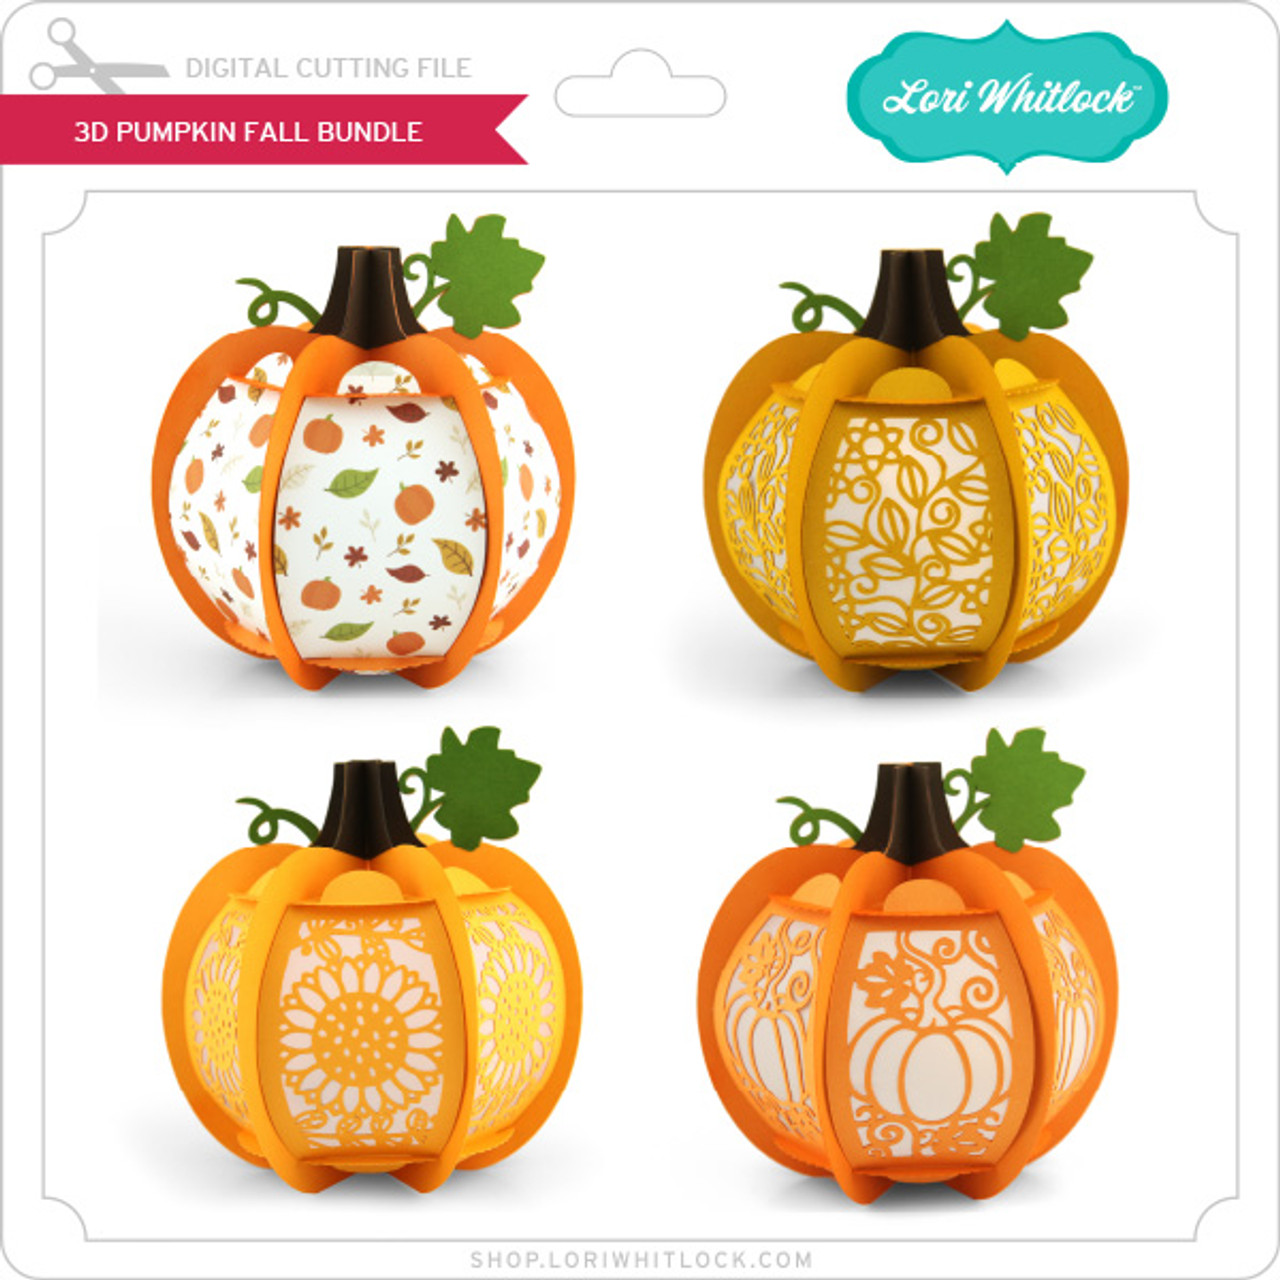 3D Pumpkin Fall Bundle - Lori Whitlock's SVG Shop